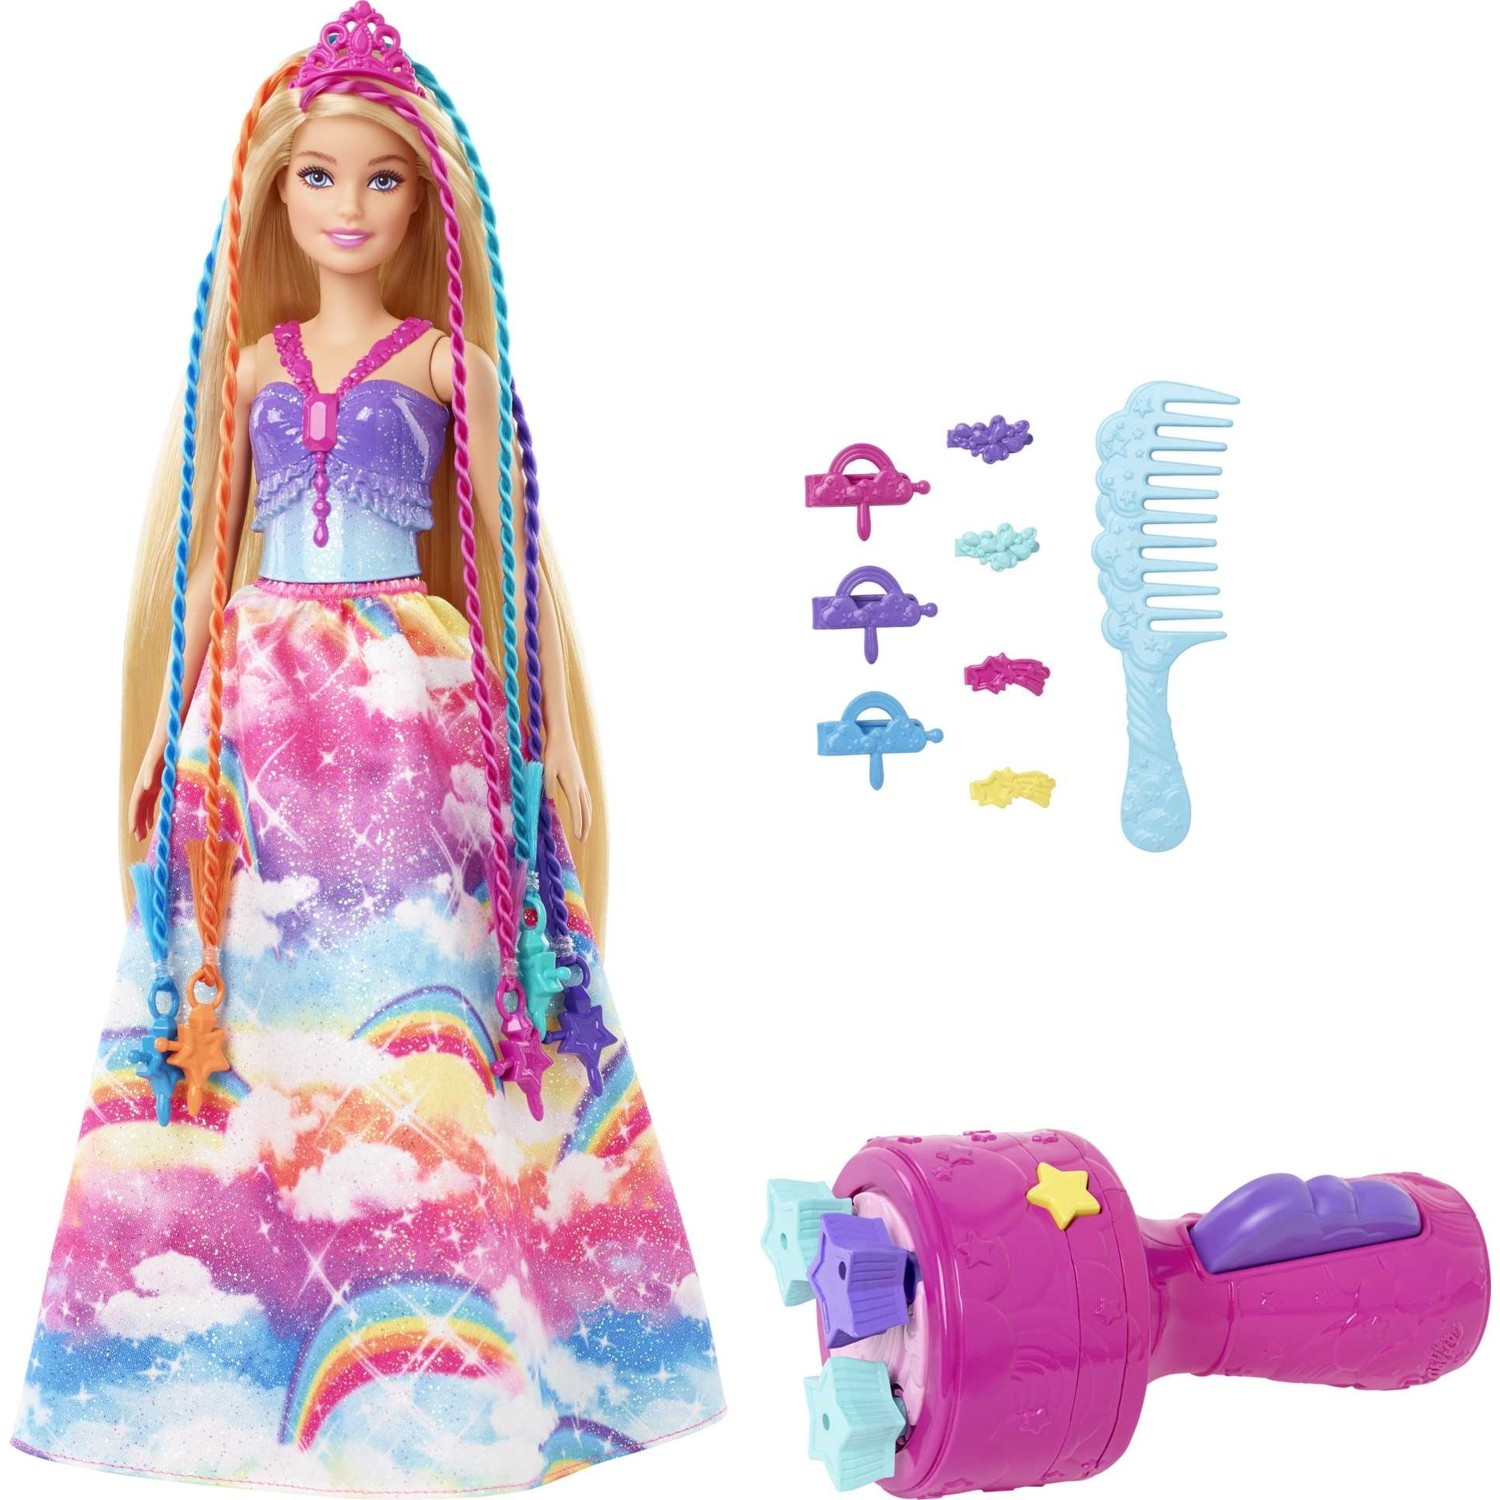 Кукла Barbie Dreamtopia Braided Princess GTG00 кукла barbie dreamtopia rainbow latiin princess